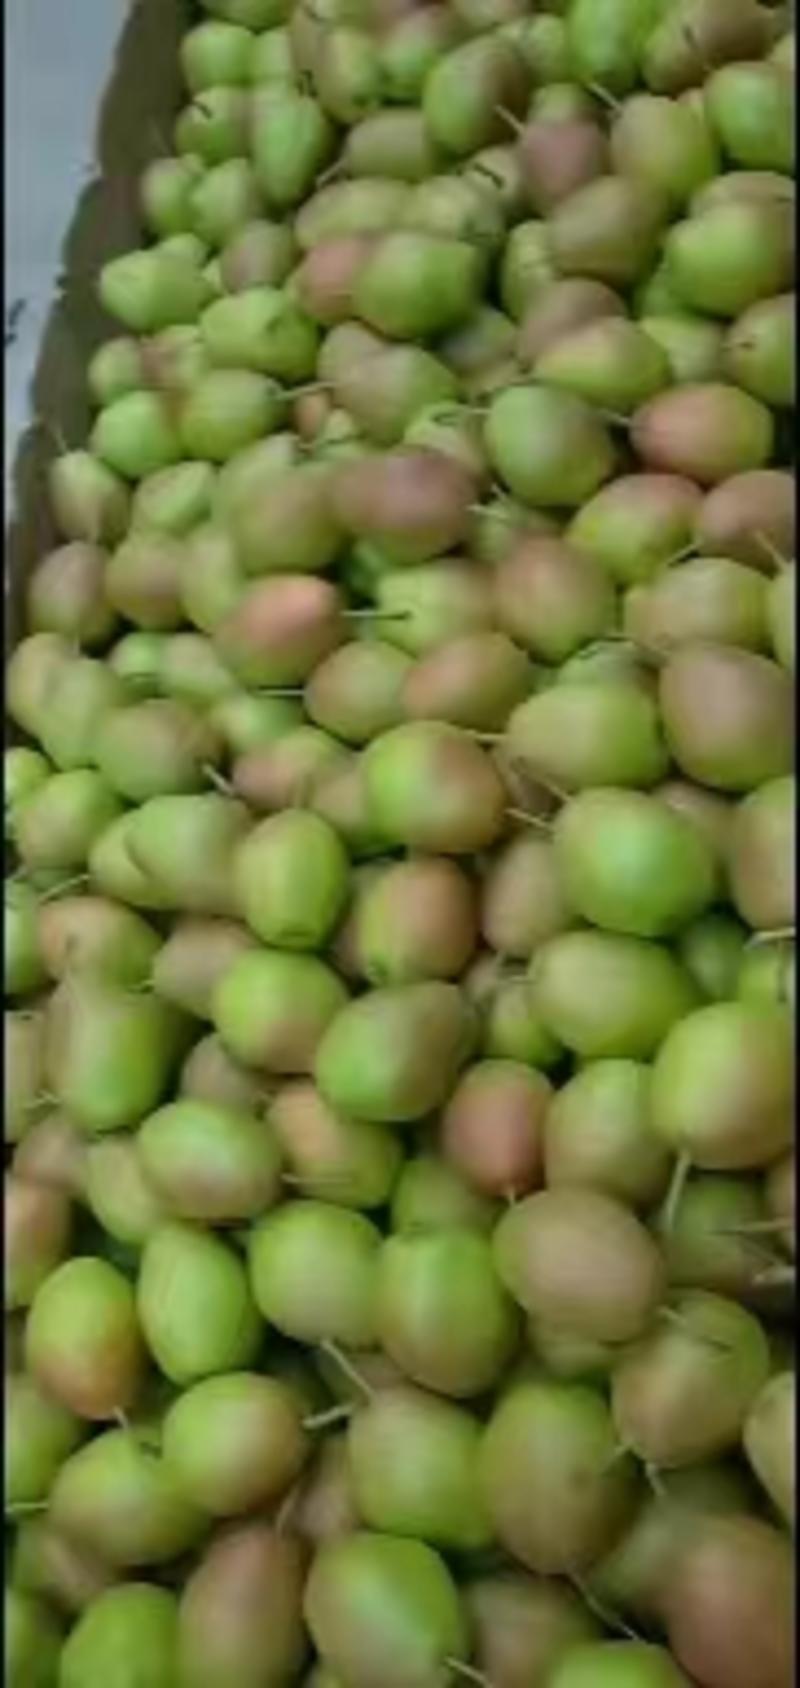 【推荐】山西运城市红香酥梨大量供应皮薄多肉脆甜可口欢迎致电